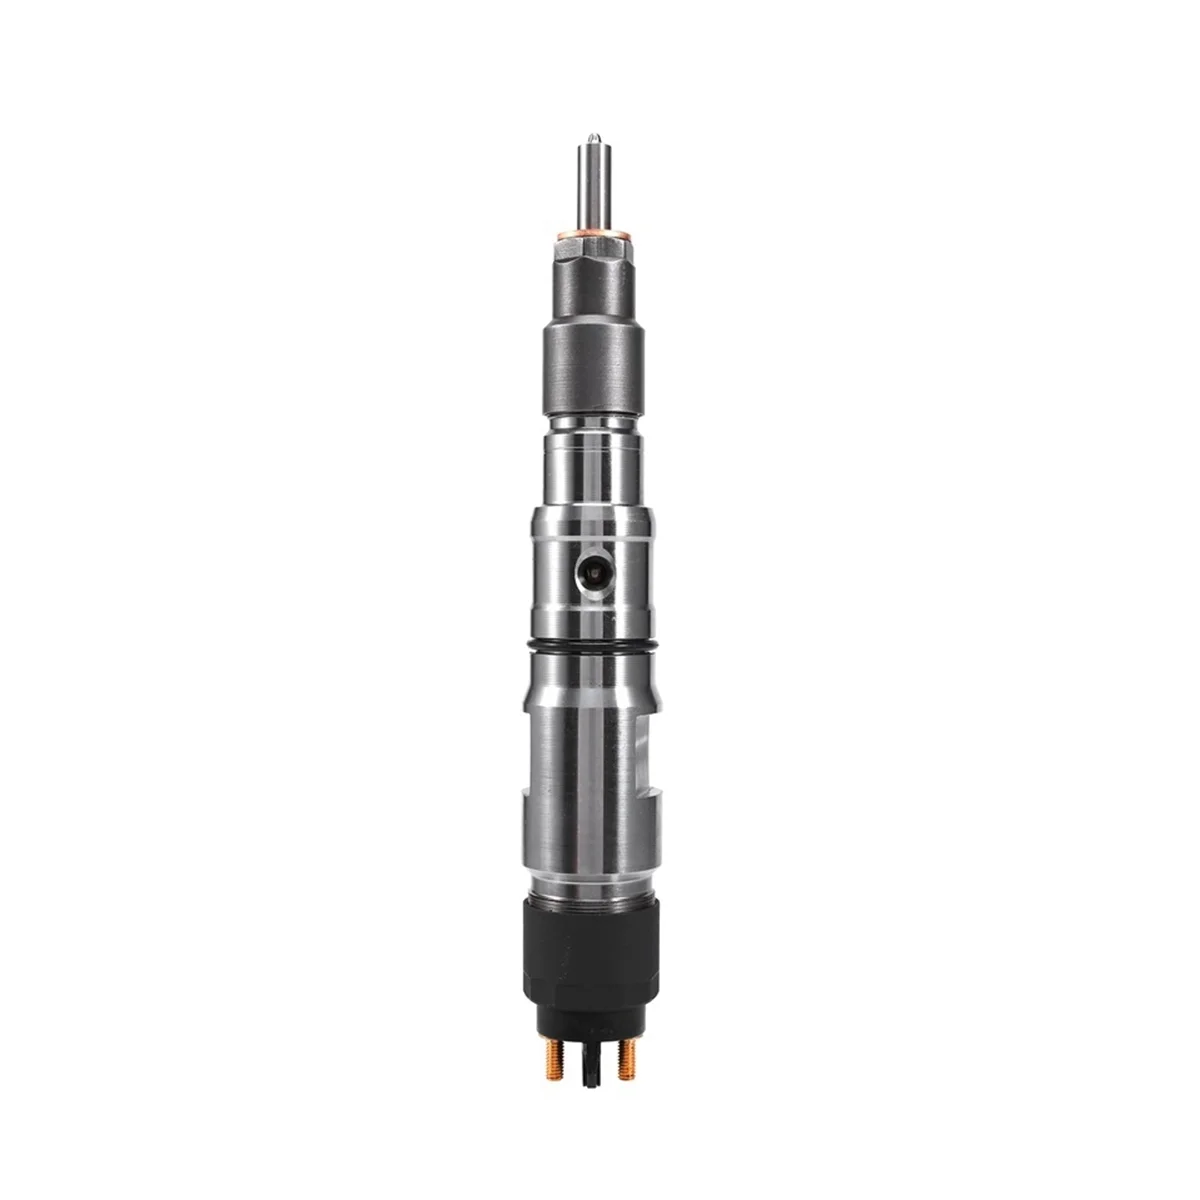 

0445120164 New Common Rail Crude Oil Fuel Injector Nozzle for Bosch for YUCHAI YC6JA